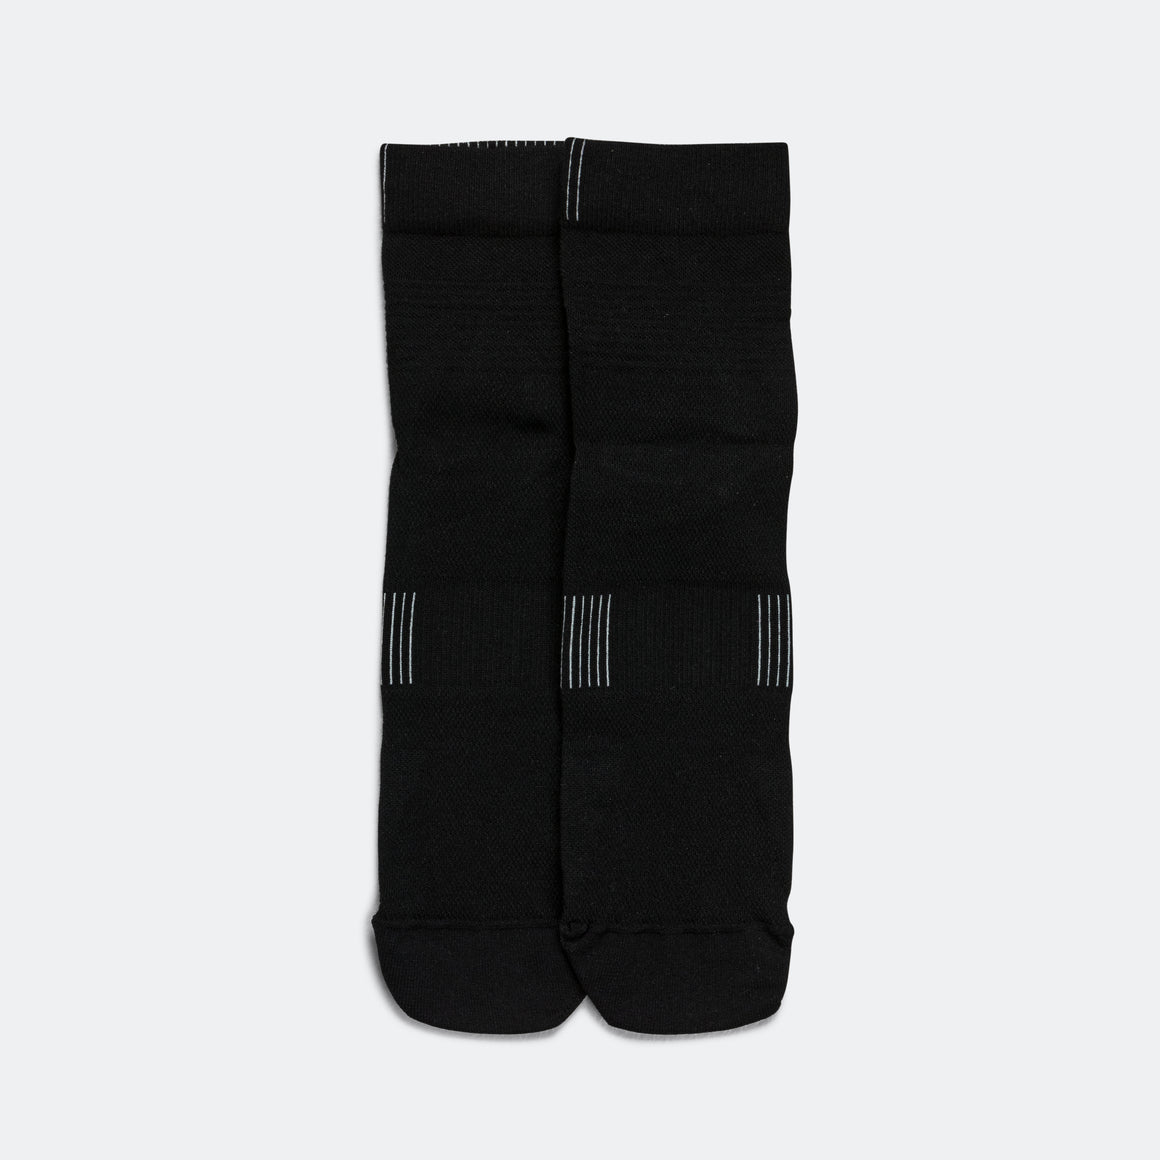 Mens Ultralight Mid Sock - Black/white